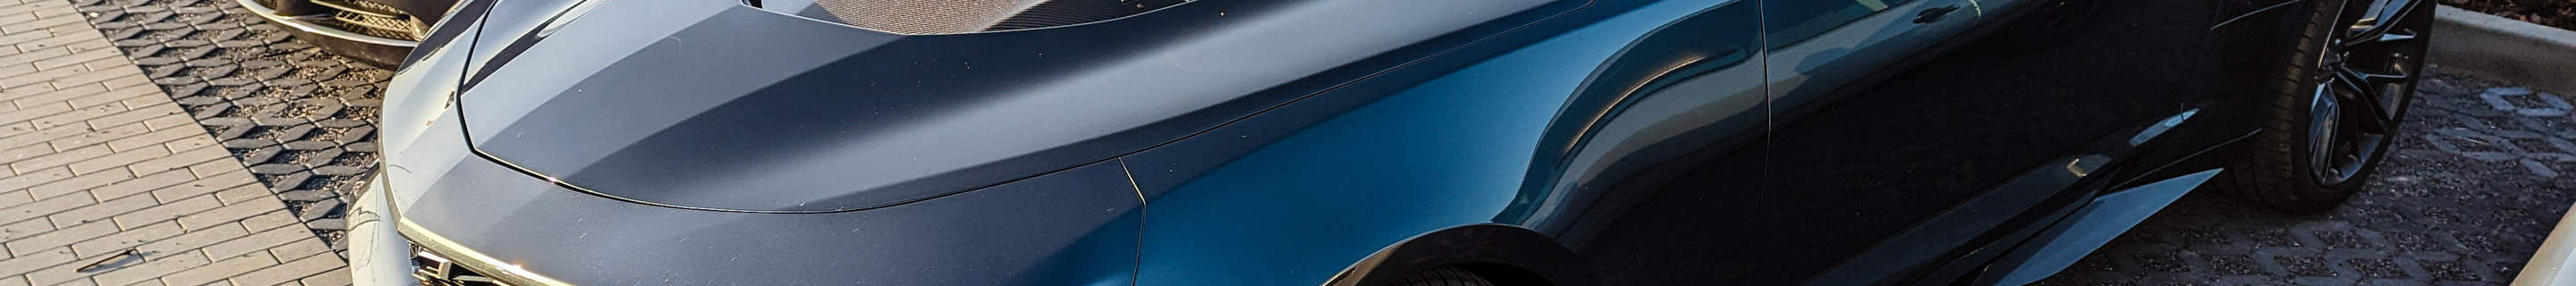 Chevrolet Camaro ZL1 Convertible 2020